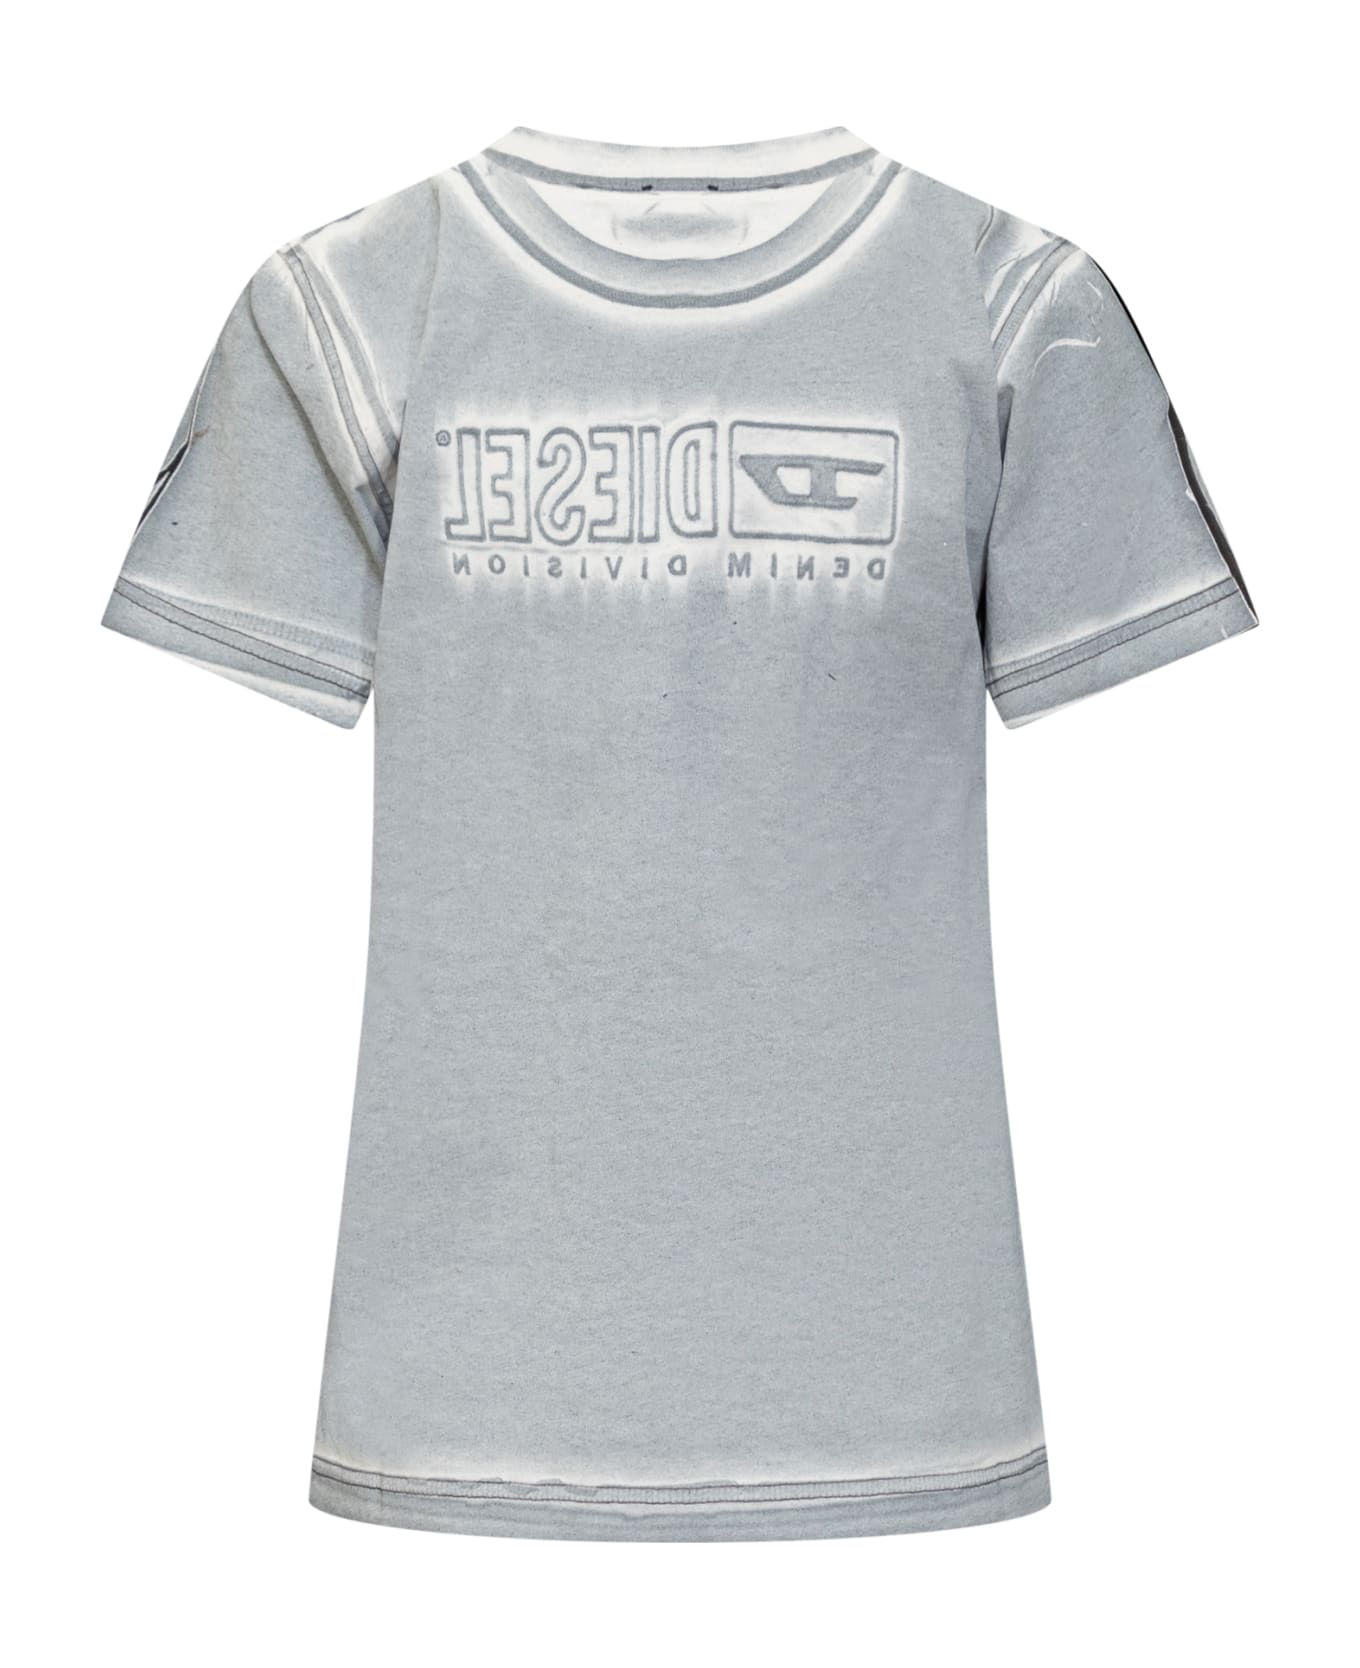 Diesel T-regsn5 T-shirt - AZZURRO